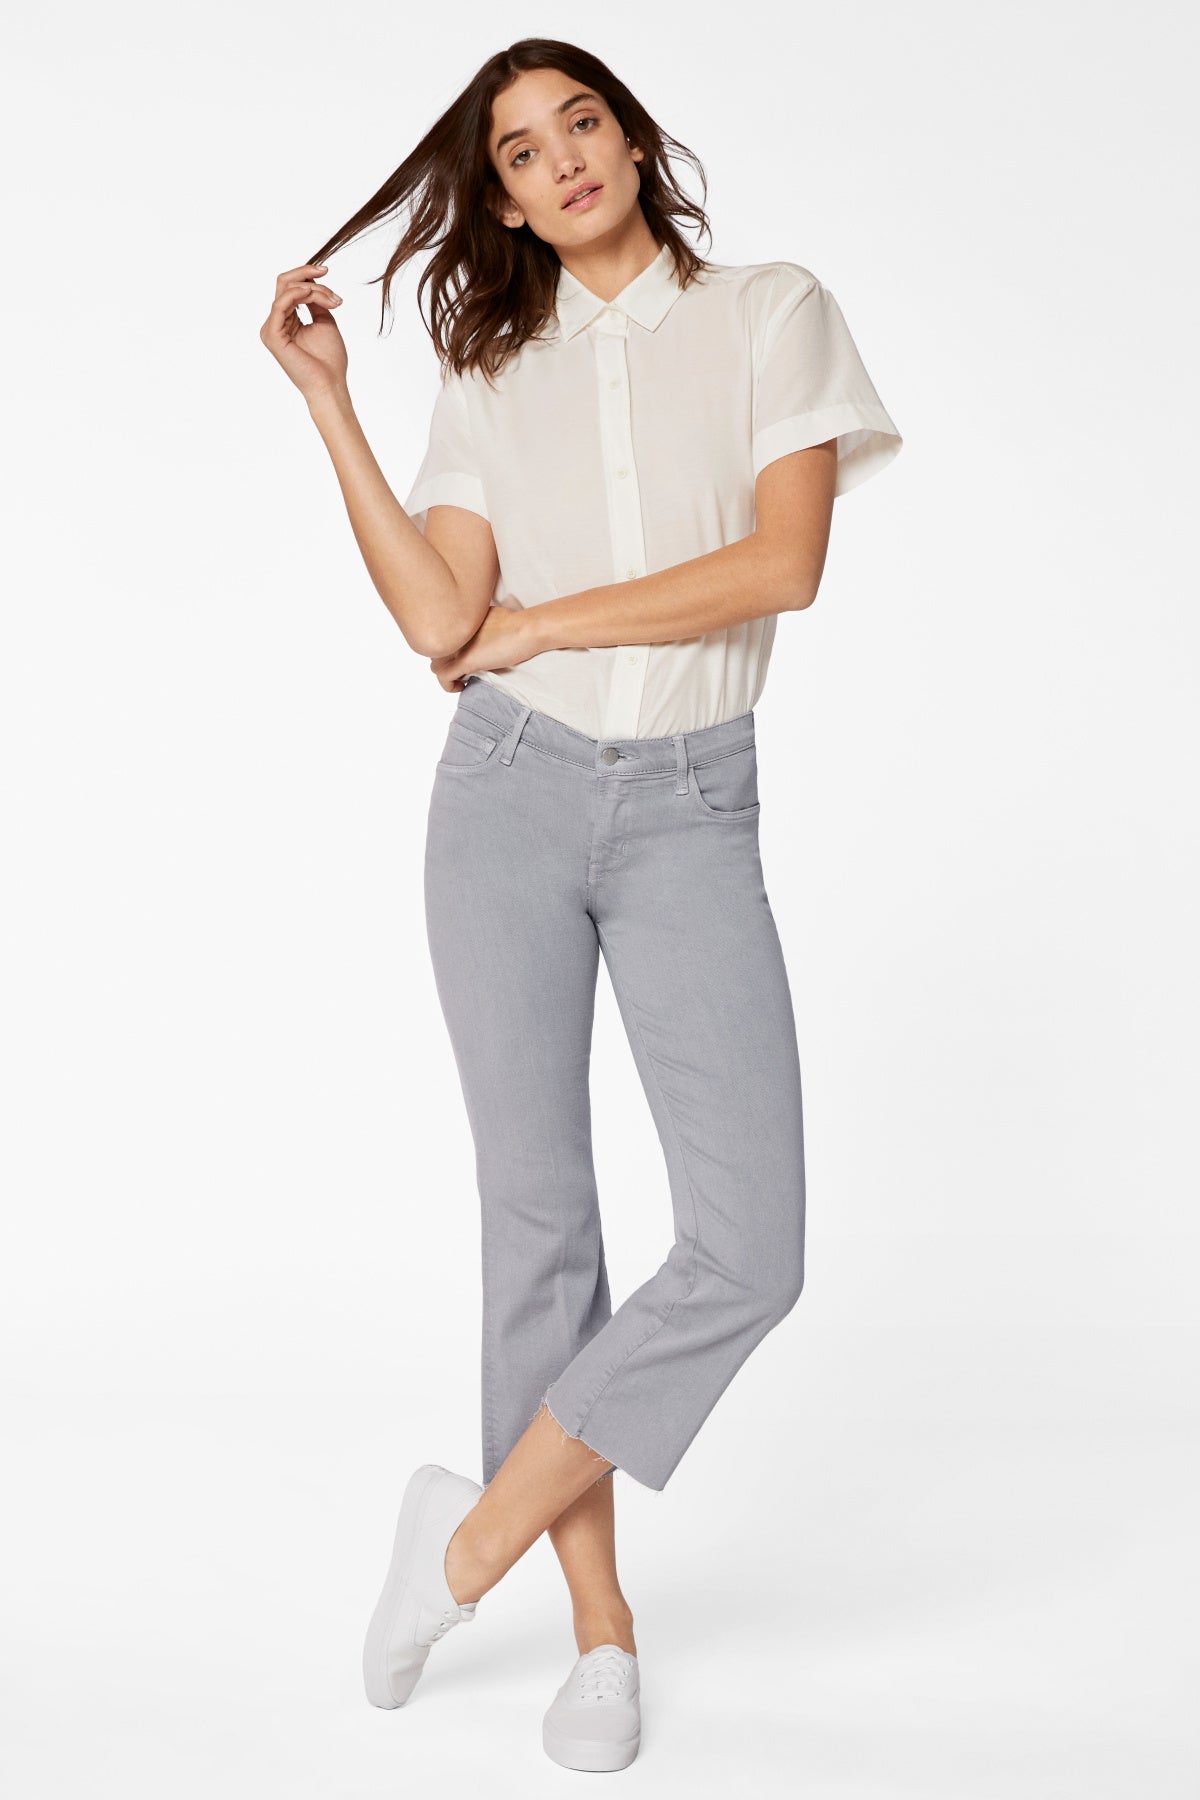 J Brand Selena Mid Rise Cropped Jeans - Estilo Boutique